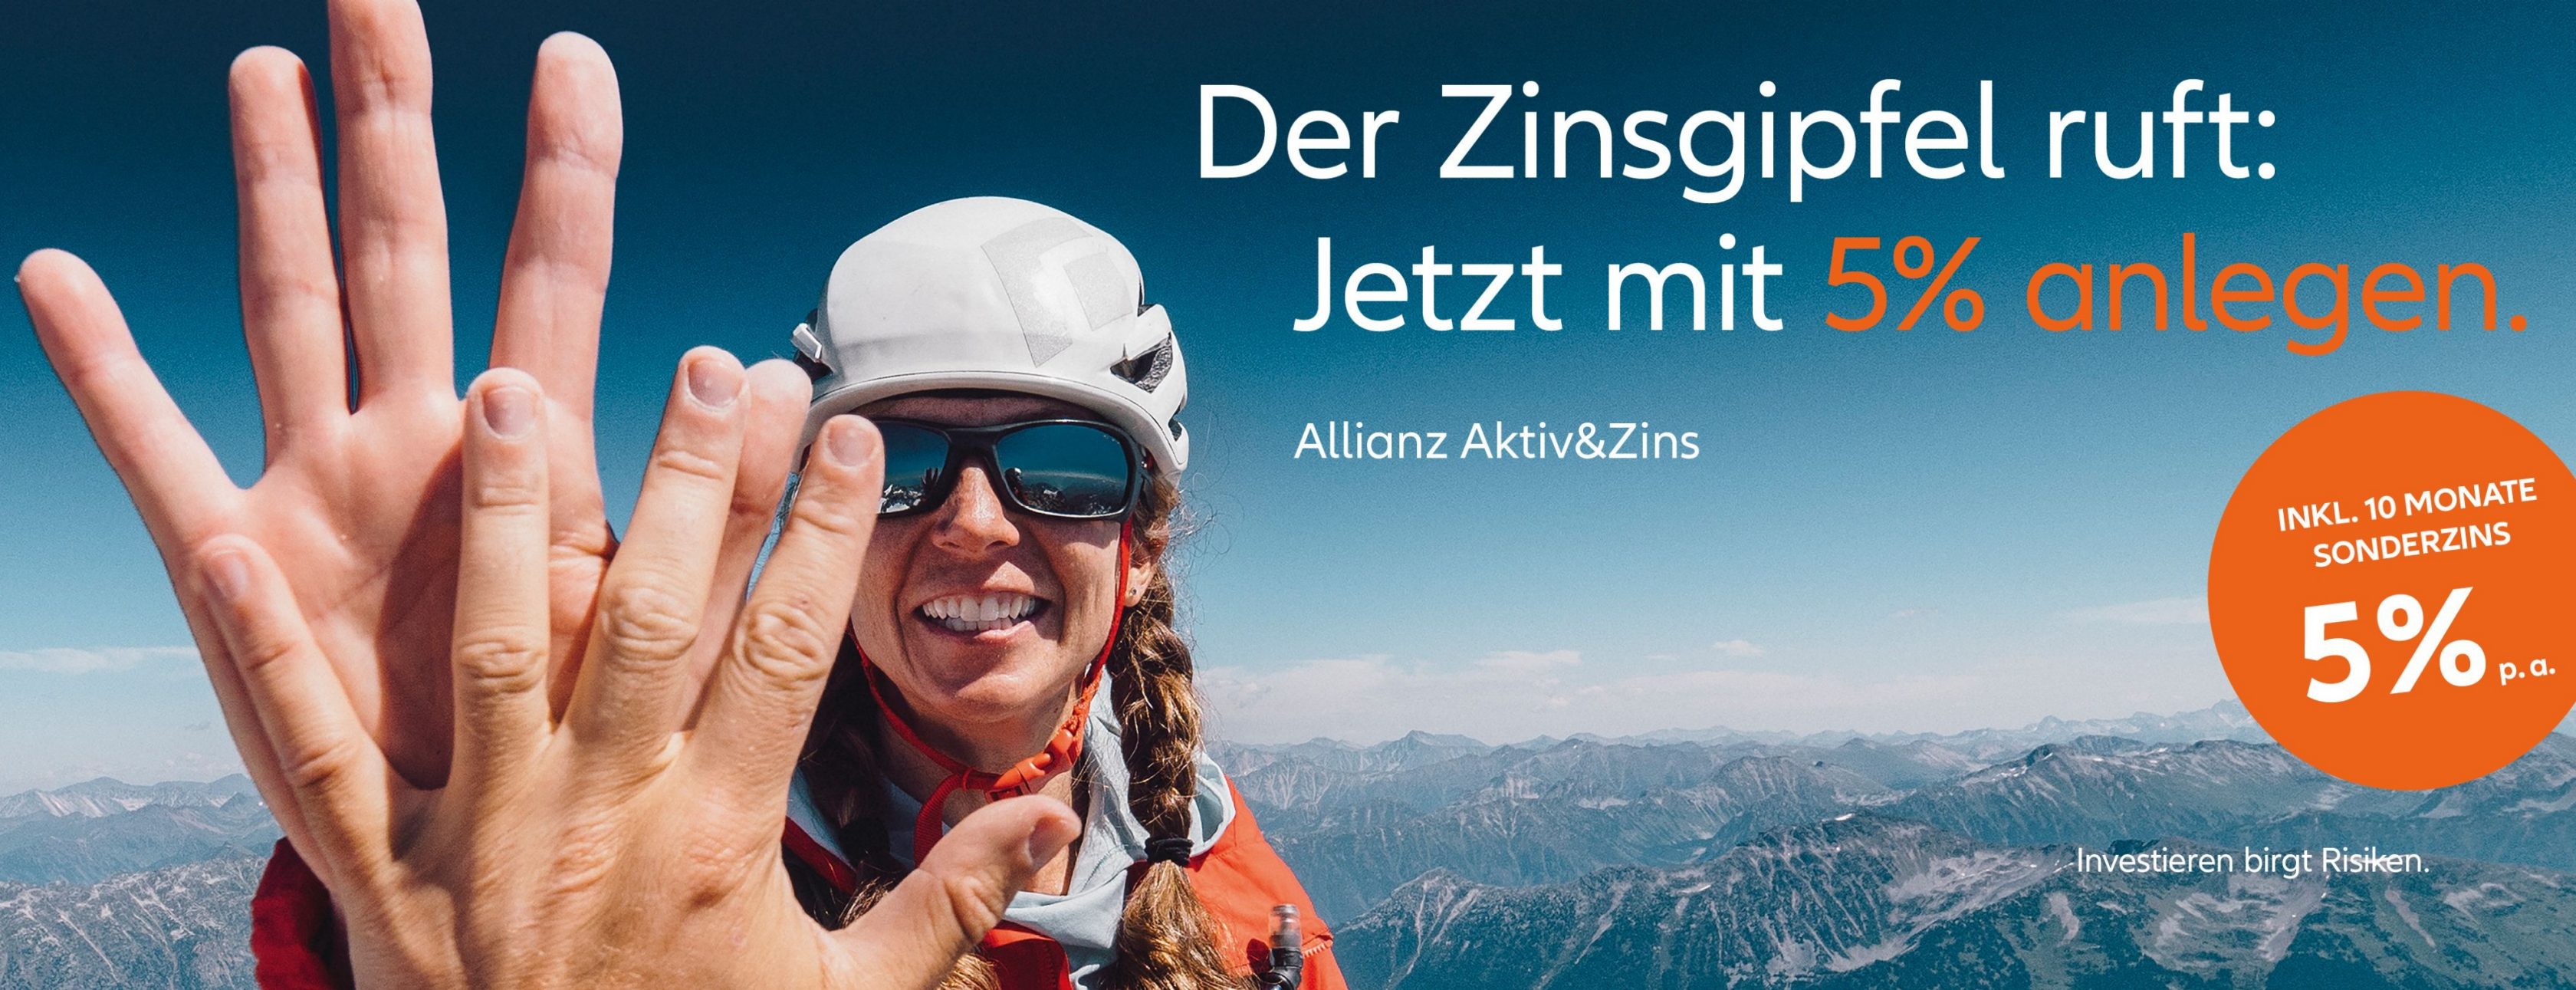 Allianz Versicherung Heidi Schnellinger Otterfing - Allianz Aktiv&Zins